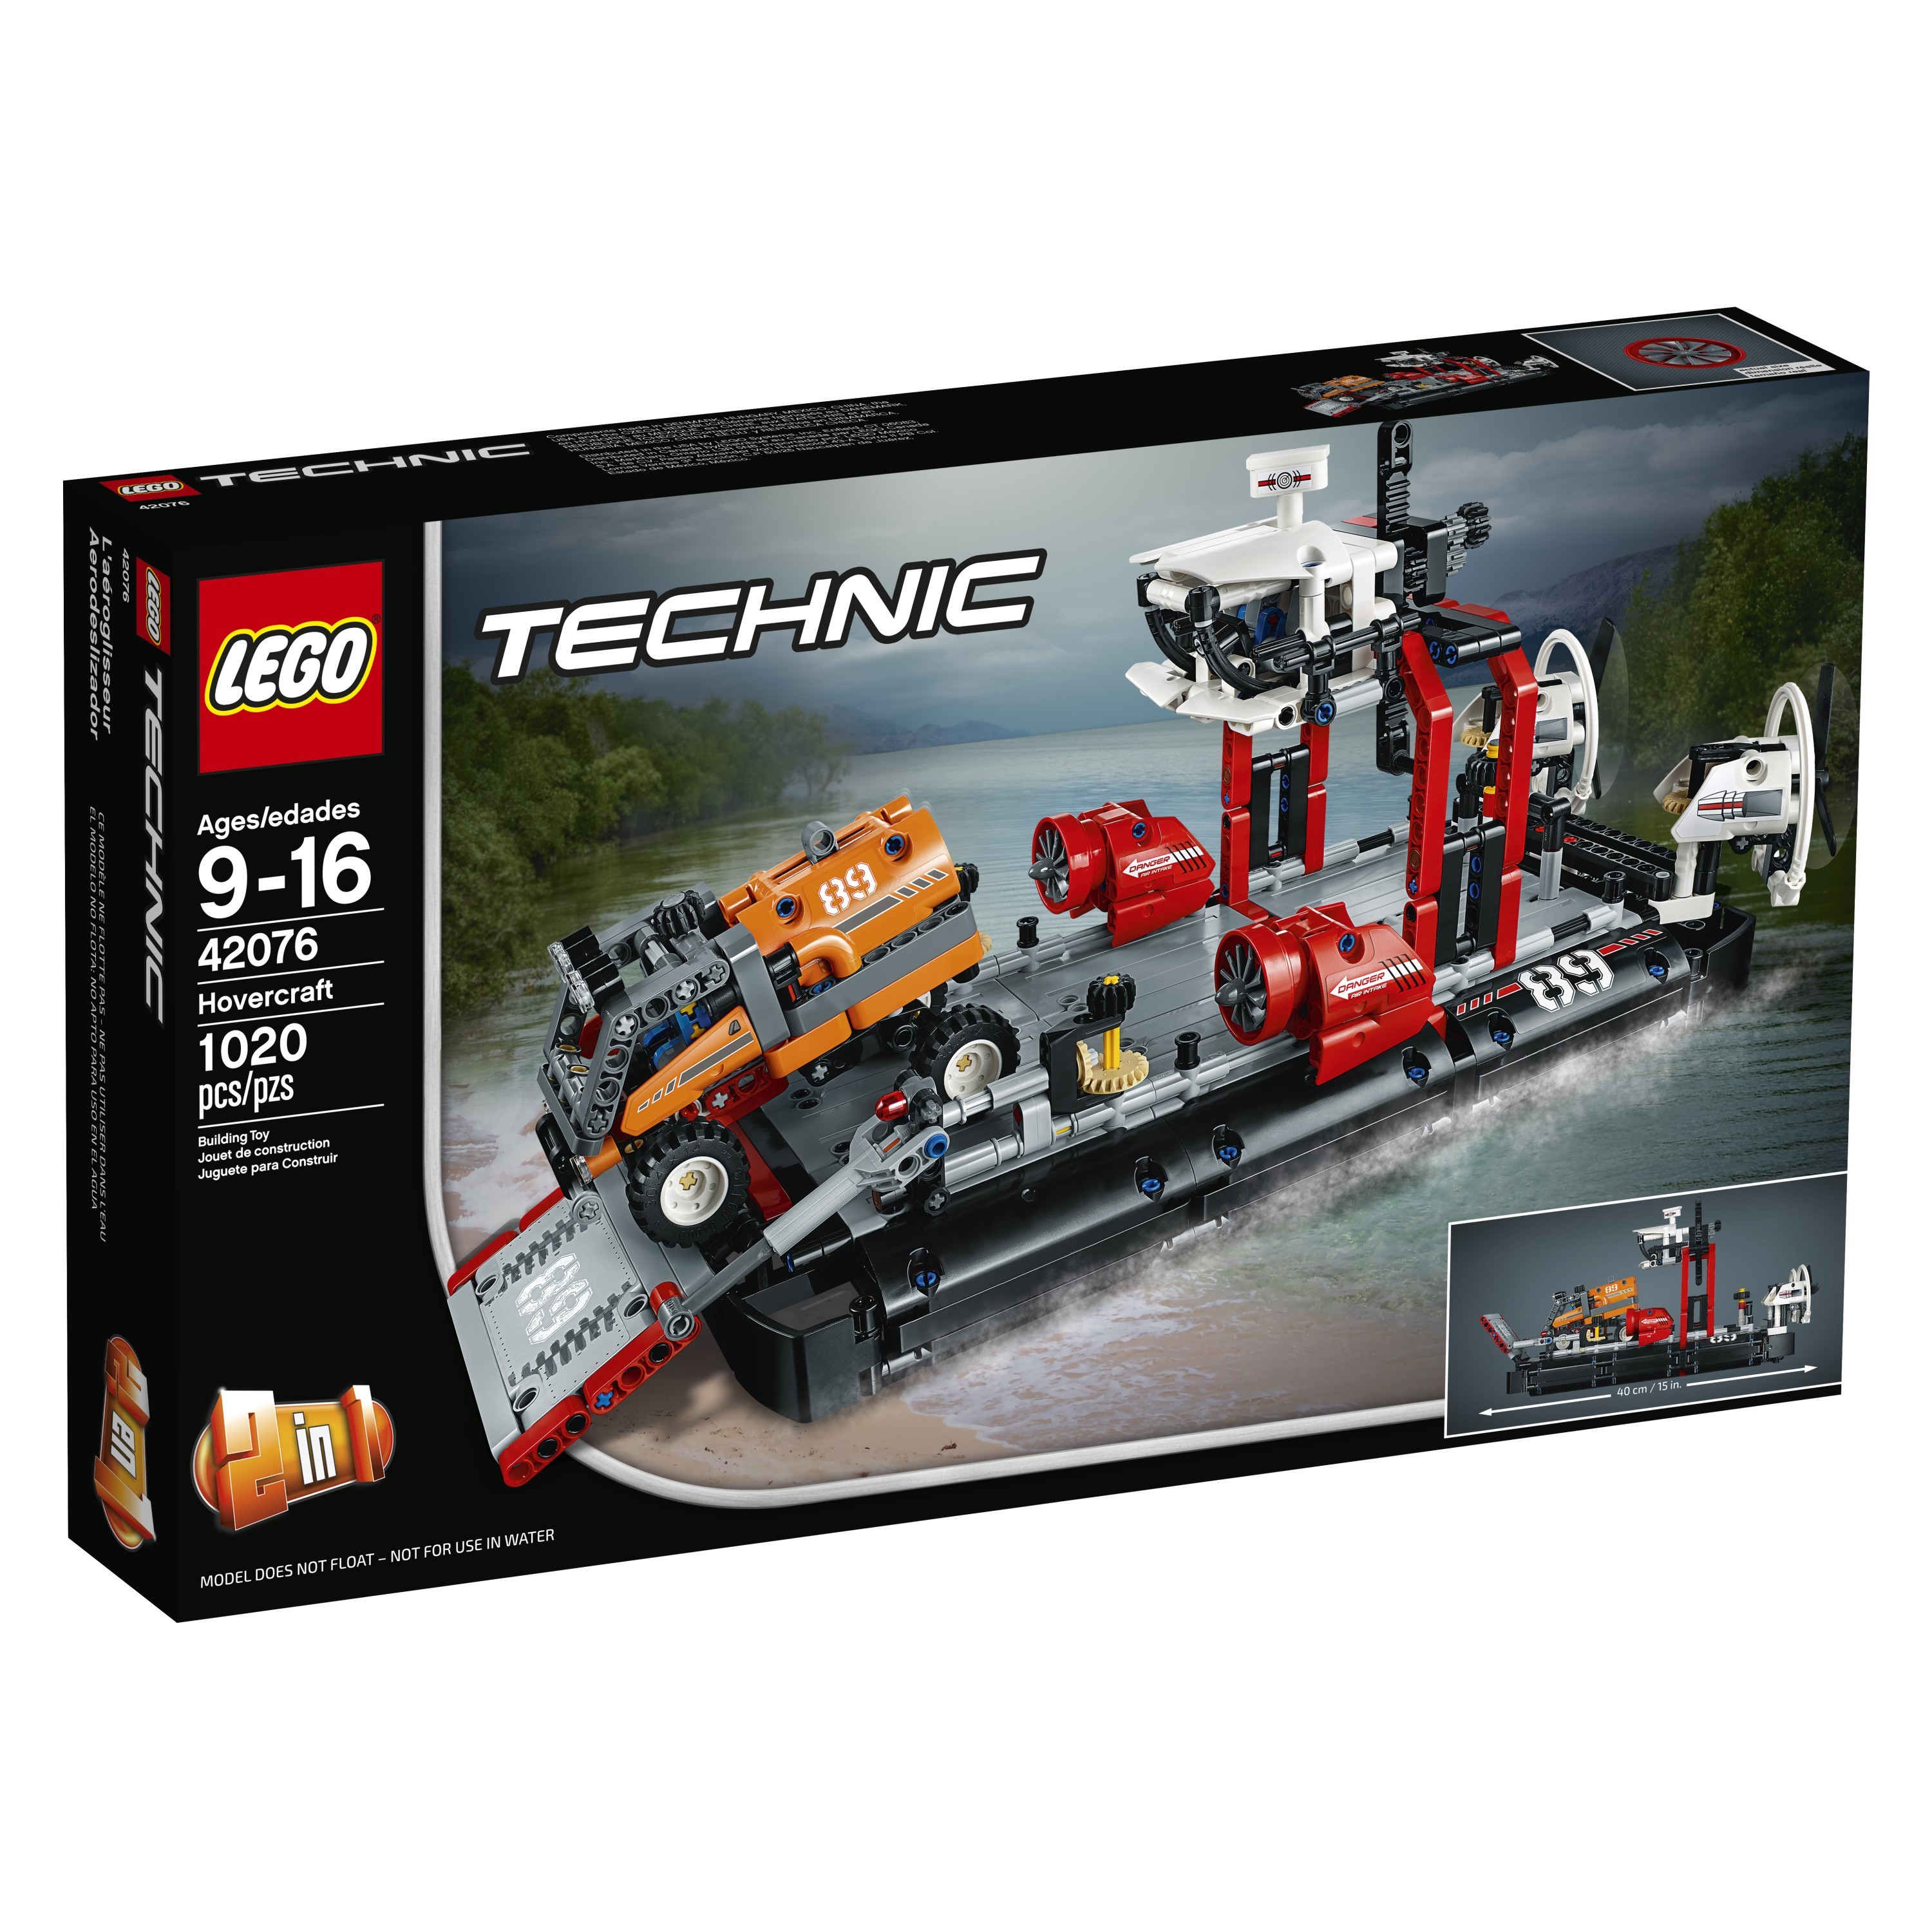 LEGO Technic Hovercraft 42076 - image 4 of 8